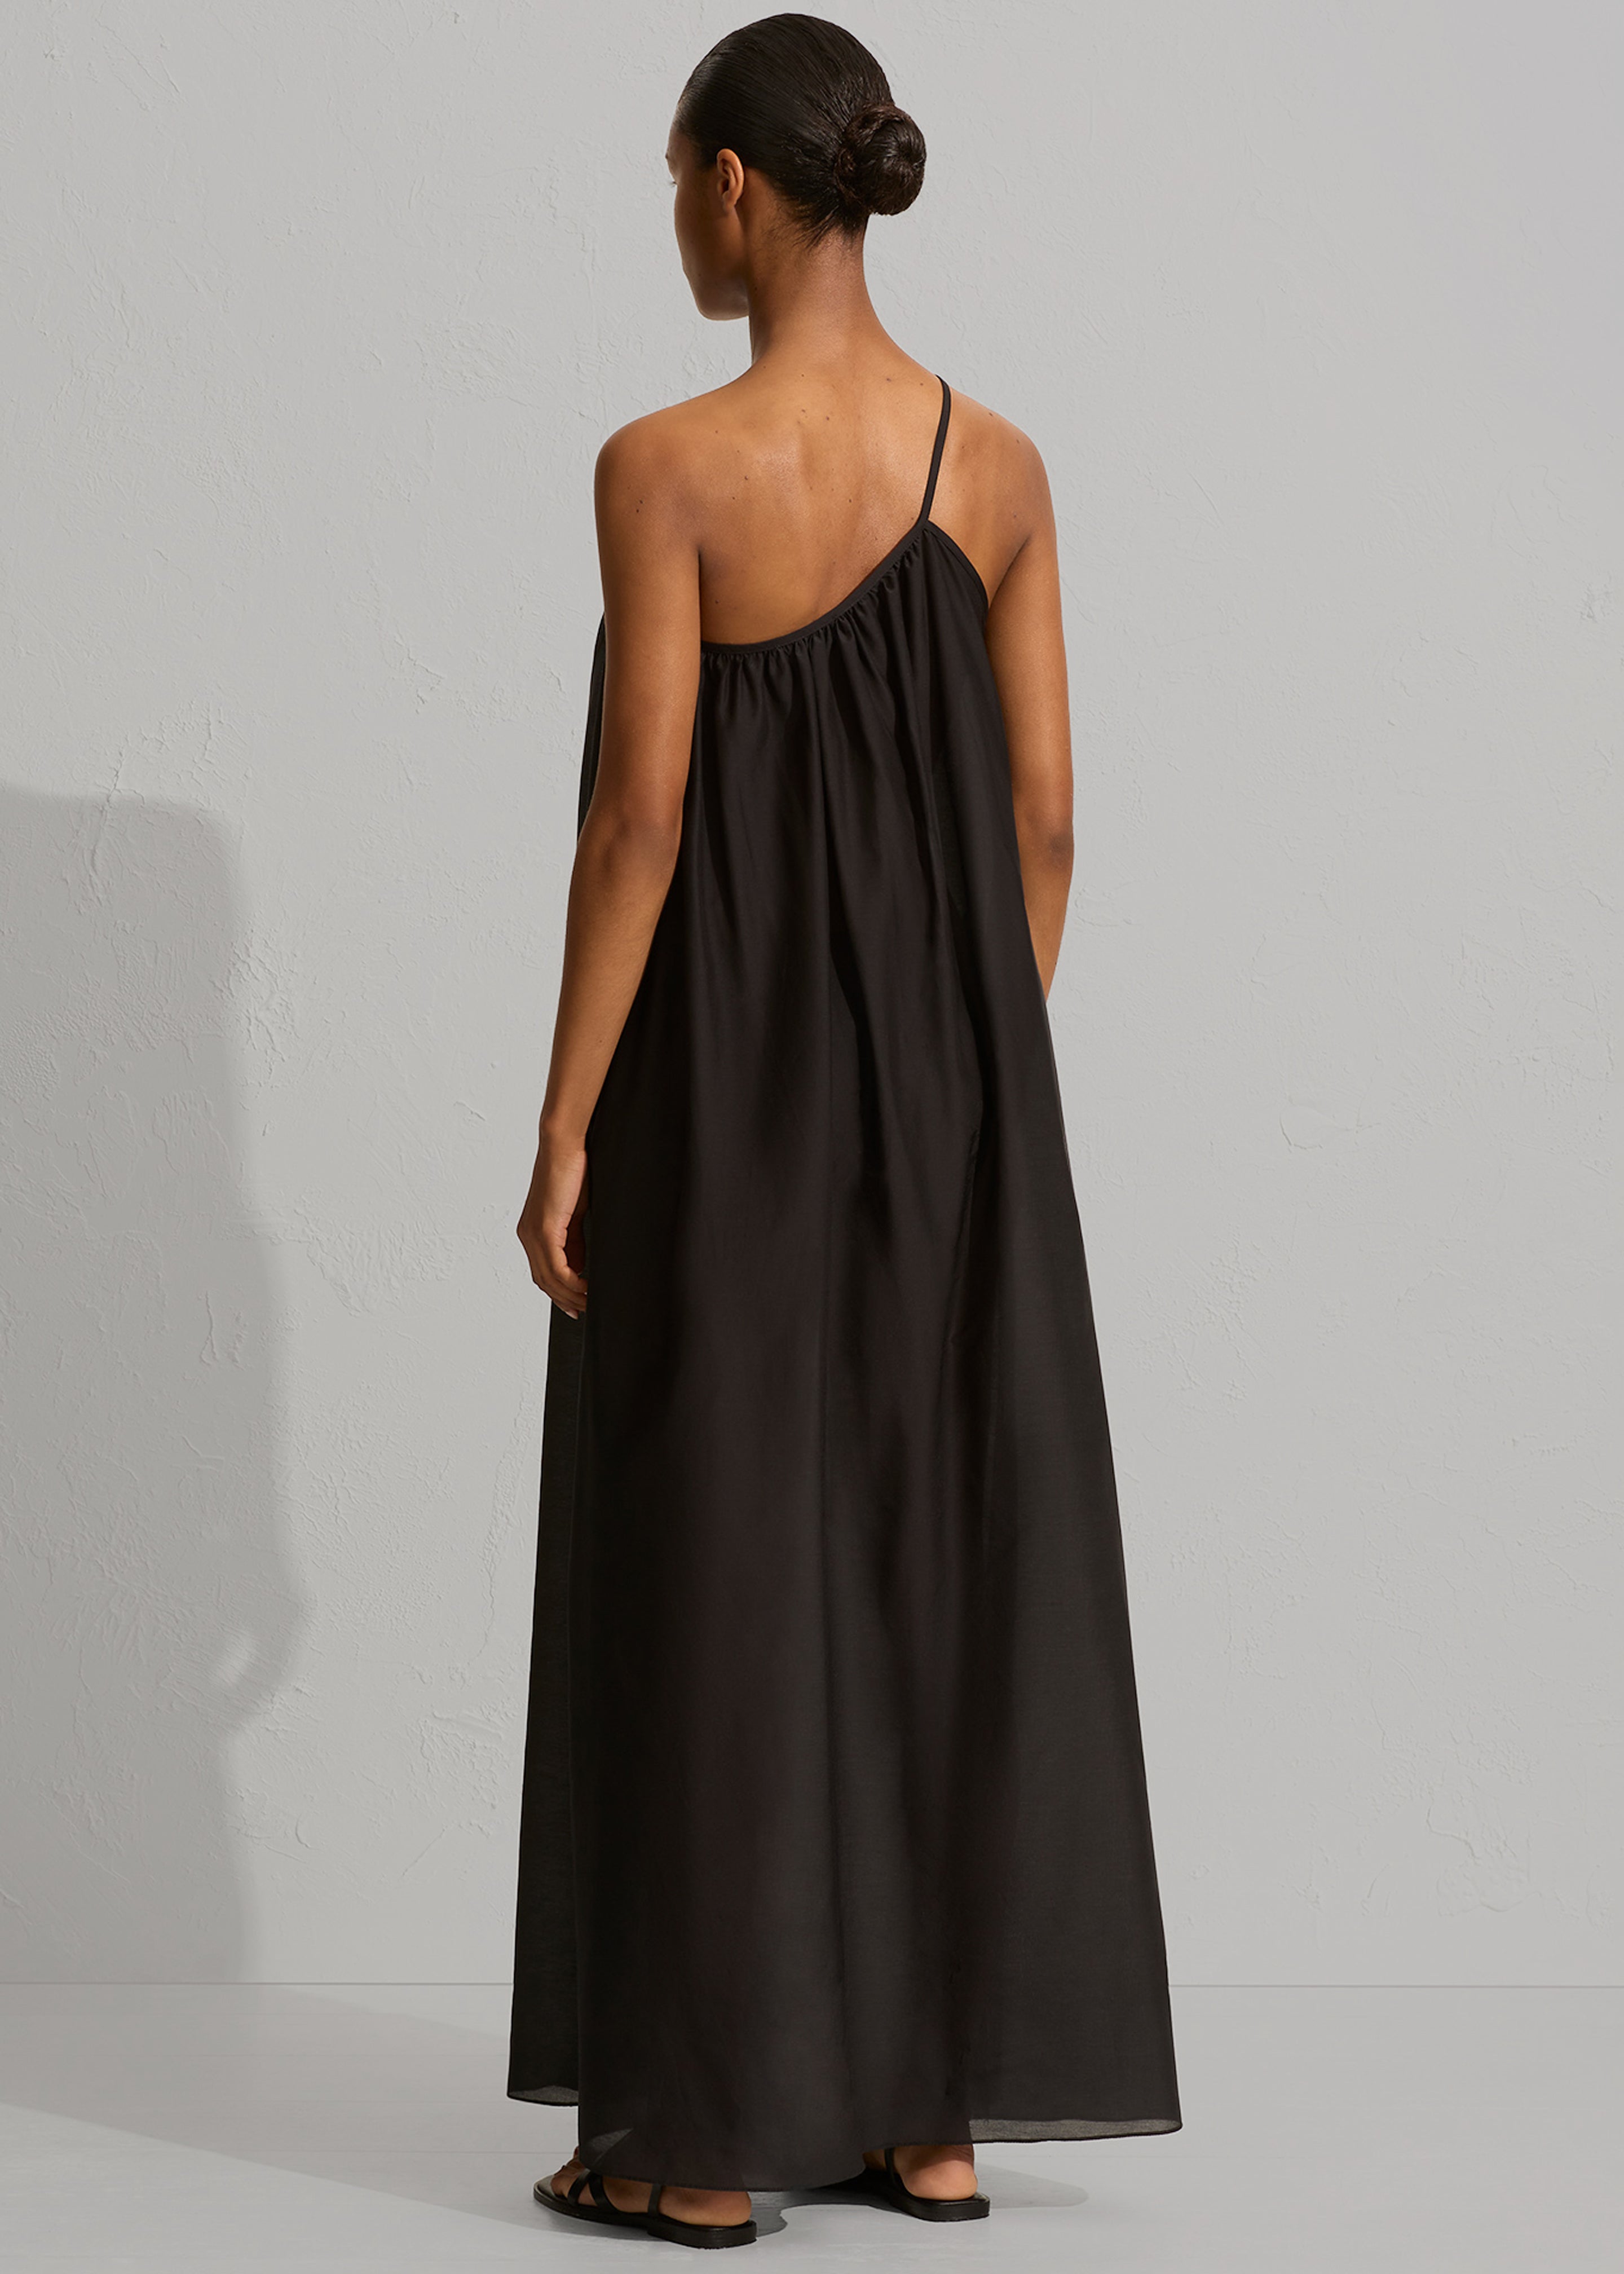 Matteau Voluminous One Shoulder Dress - Black - 4